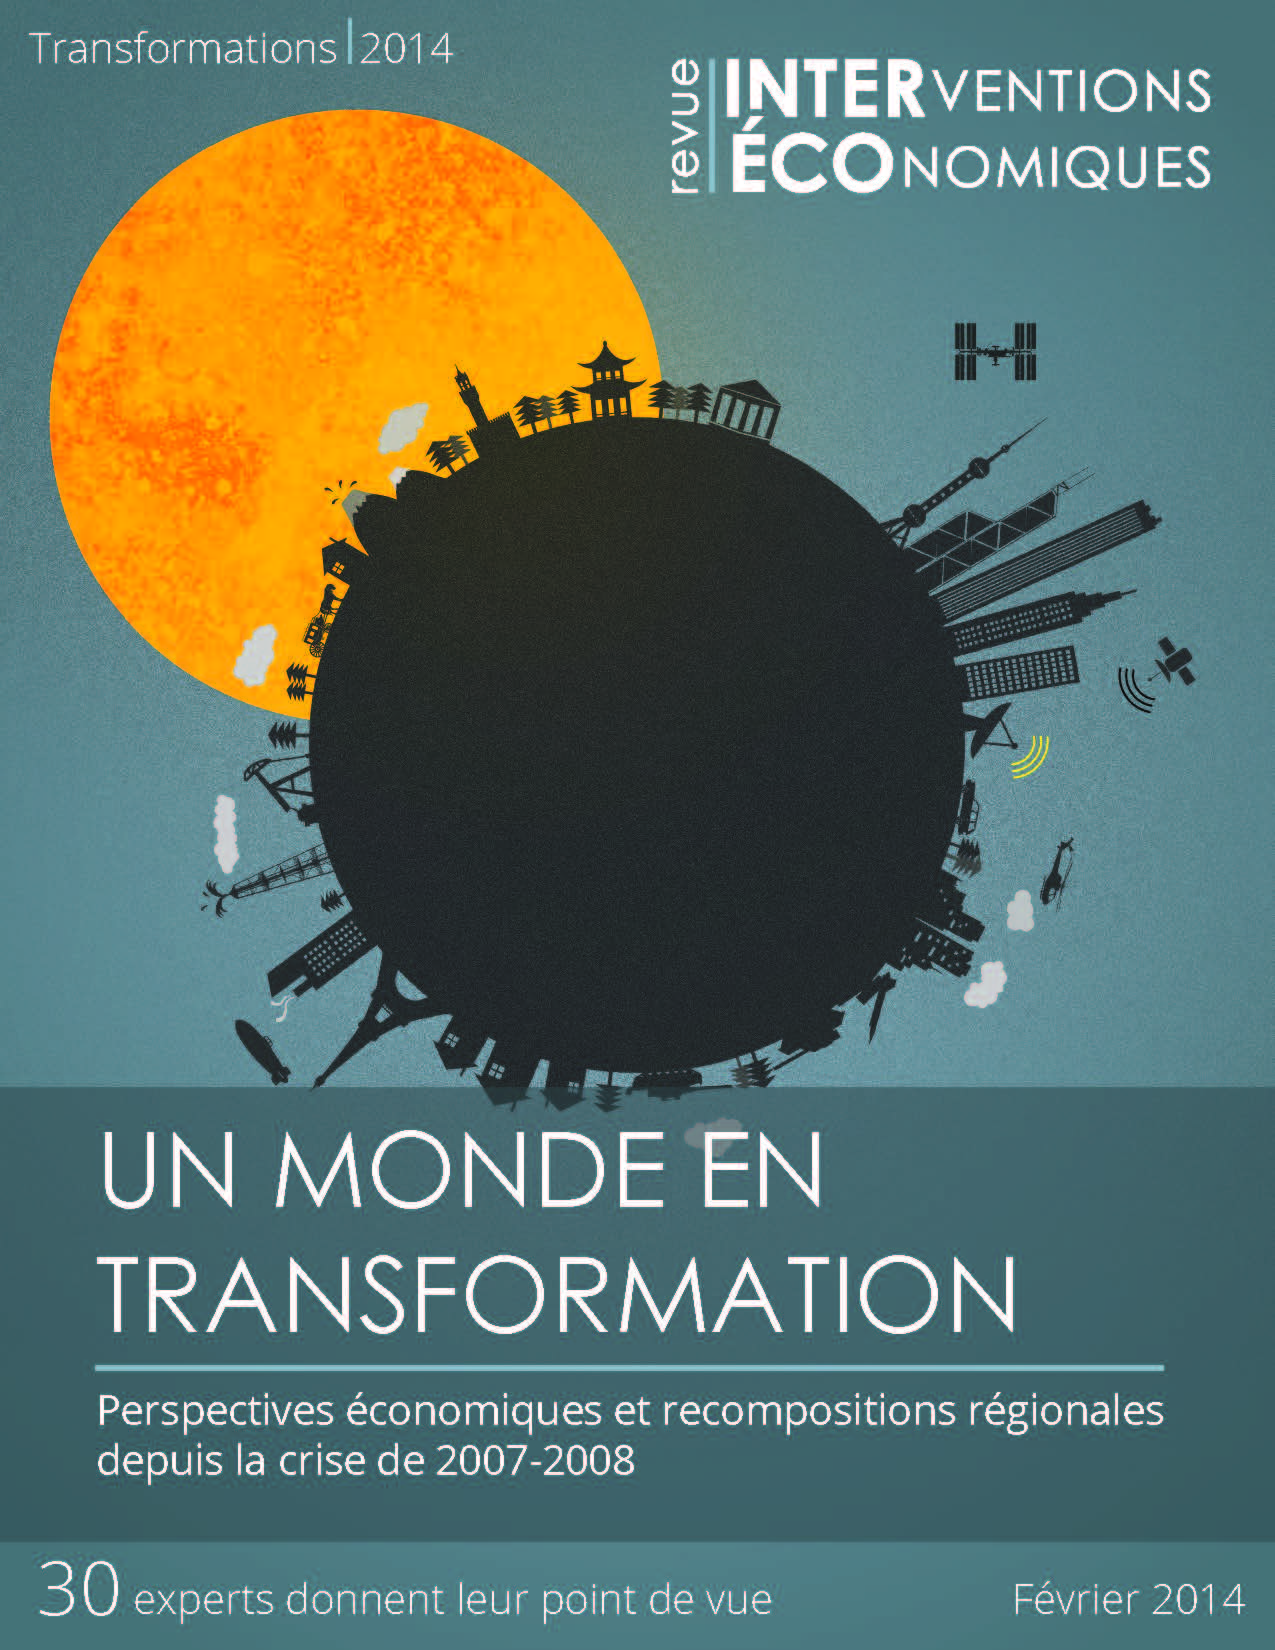 Un monde en transformation : Perspectives économiques et recompositions régionales depuis la crise de 2007-2008